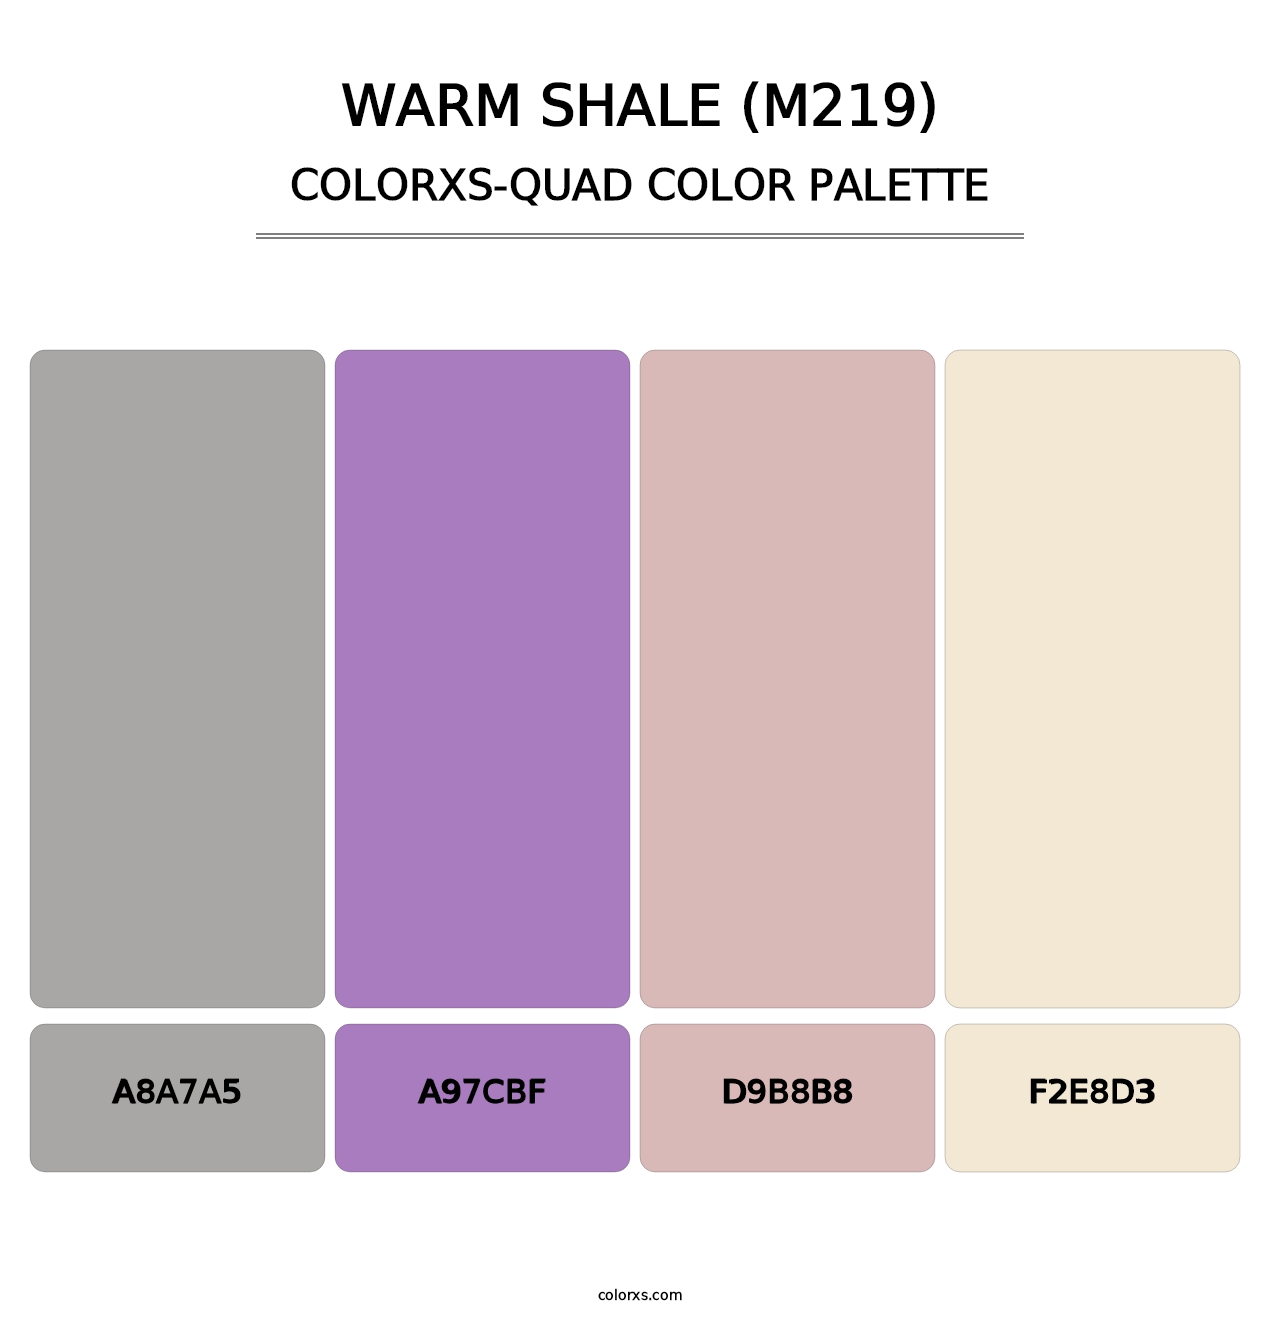 Warm Shale (M219) - Colorxs Quad Palette